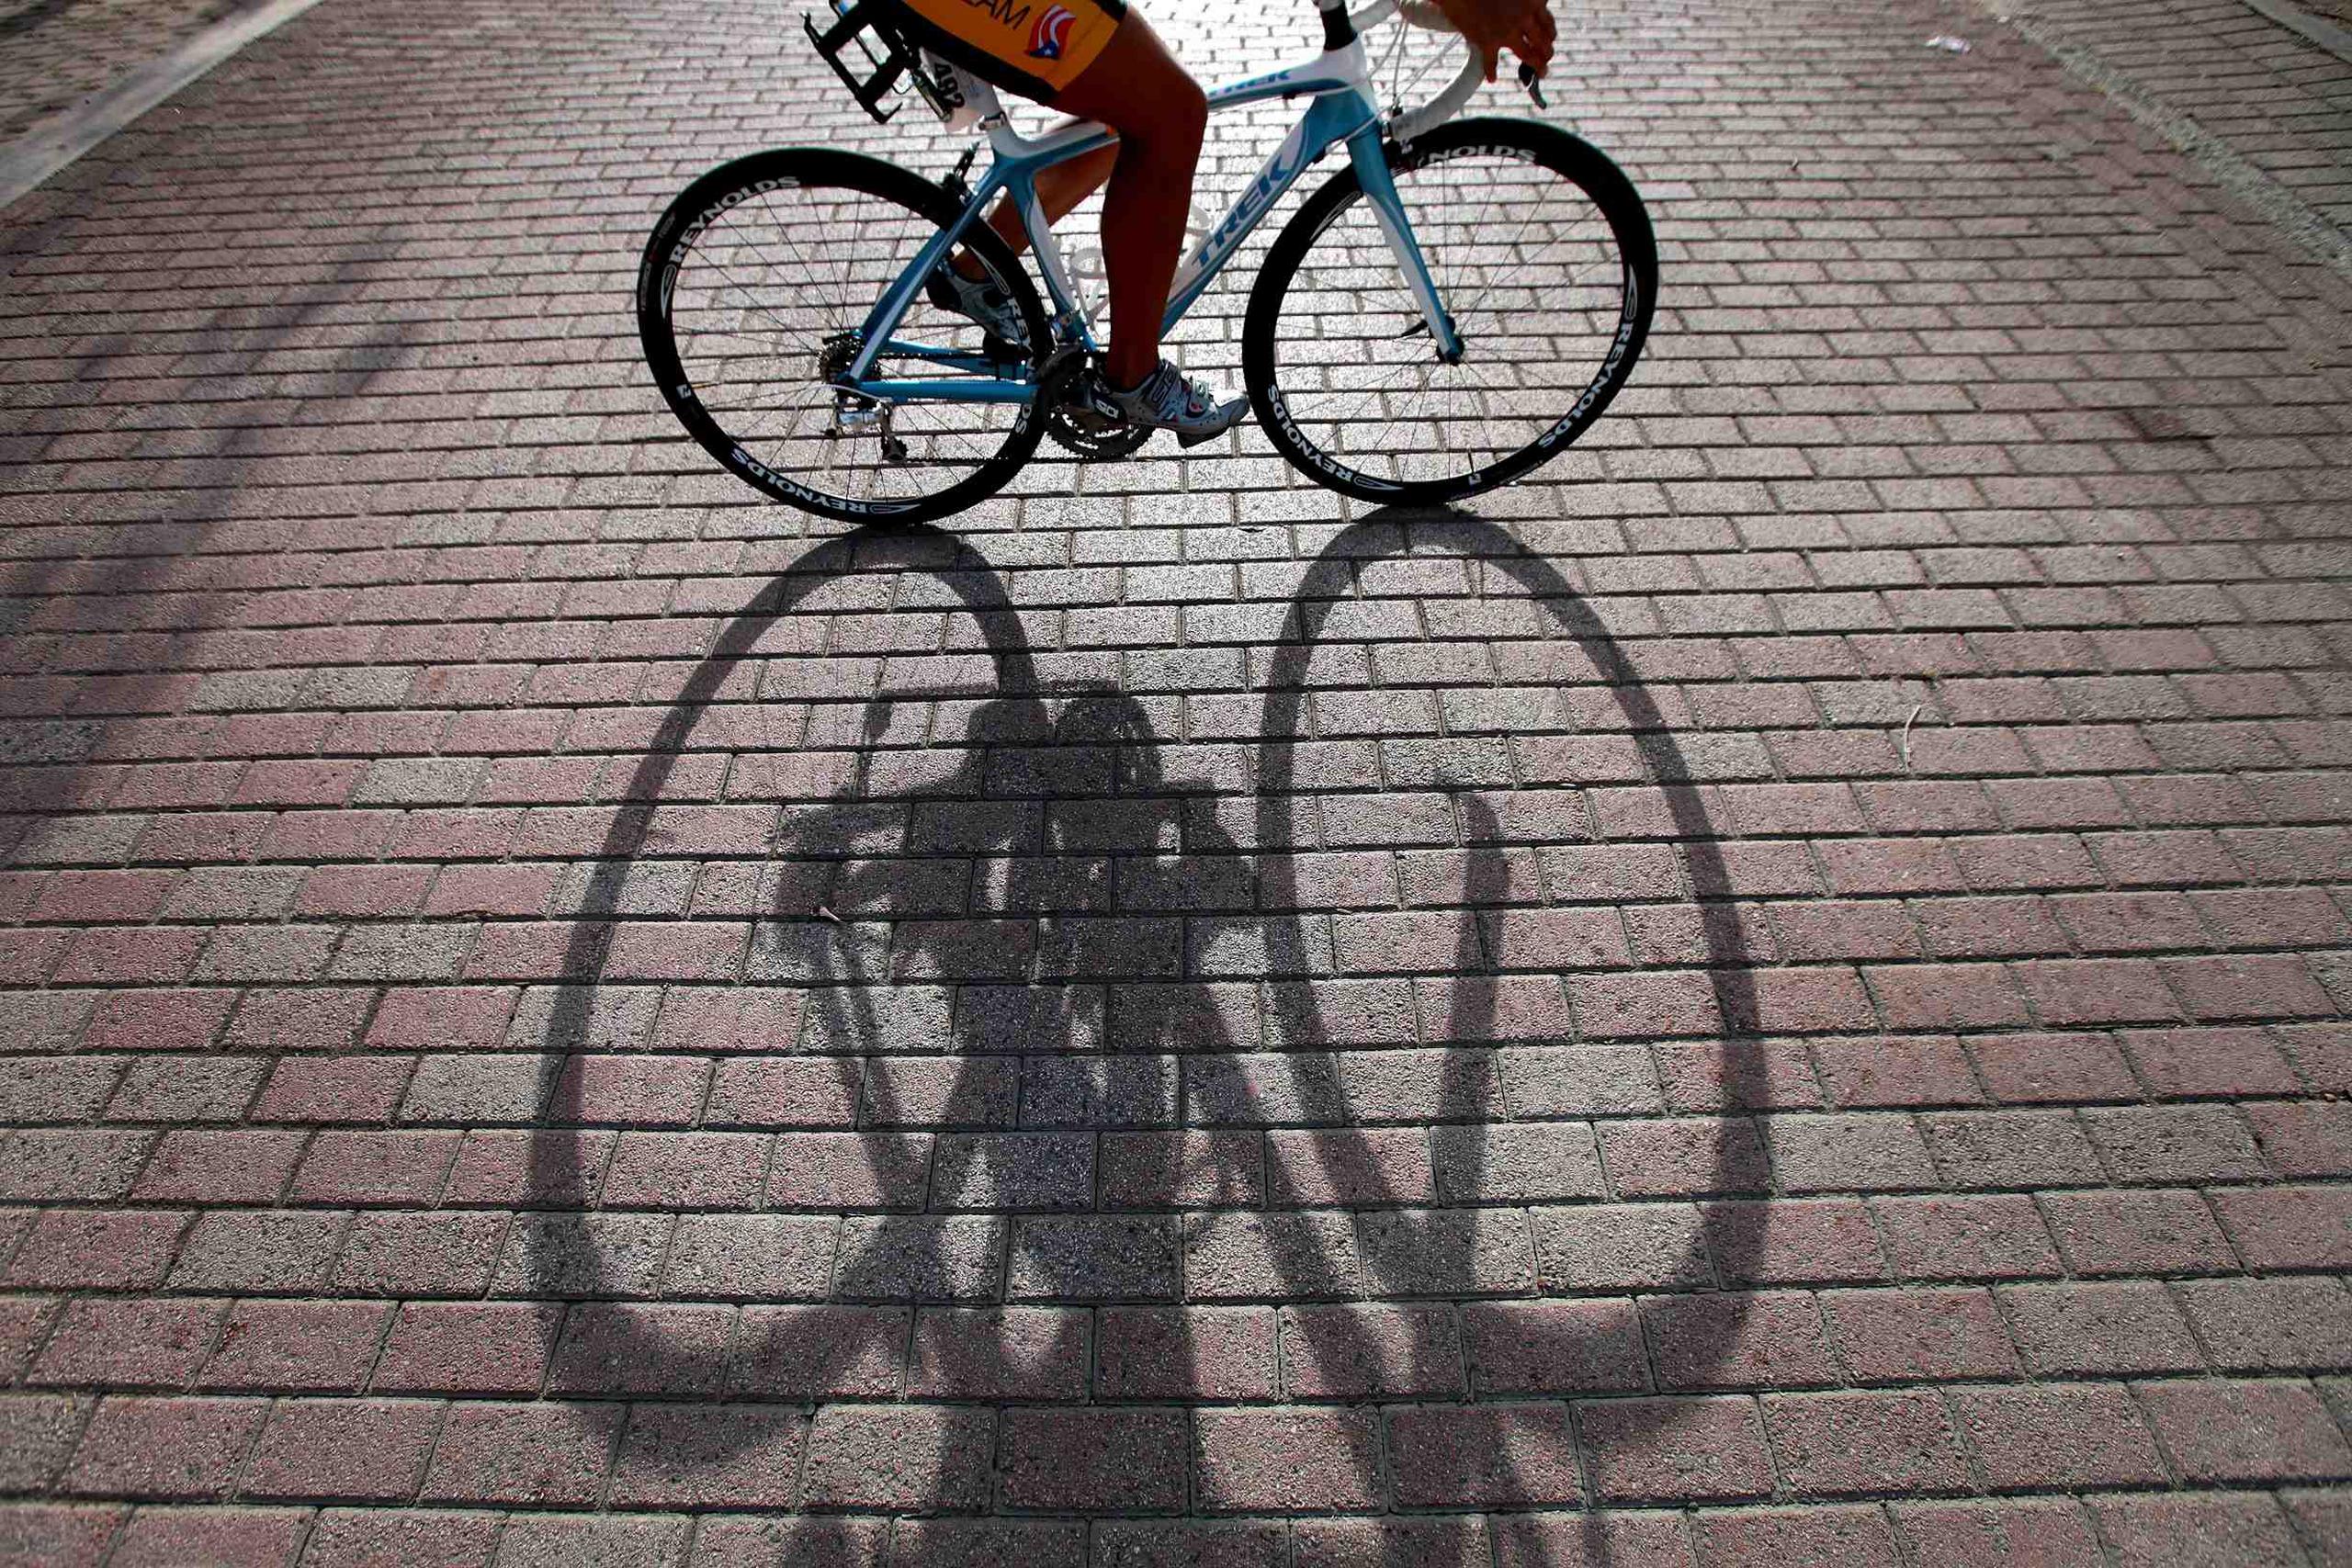 Existen algunas medidas que debes evaluar para reducir la presión en los nervios y vasos sanguíneos mientras montas tu bicicleta. (GFR Media)